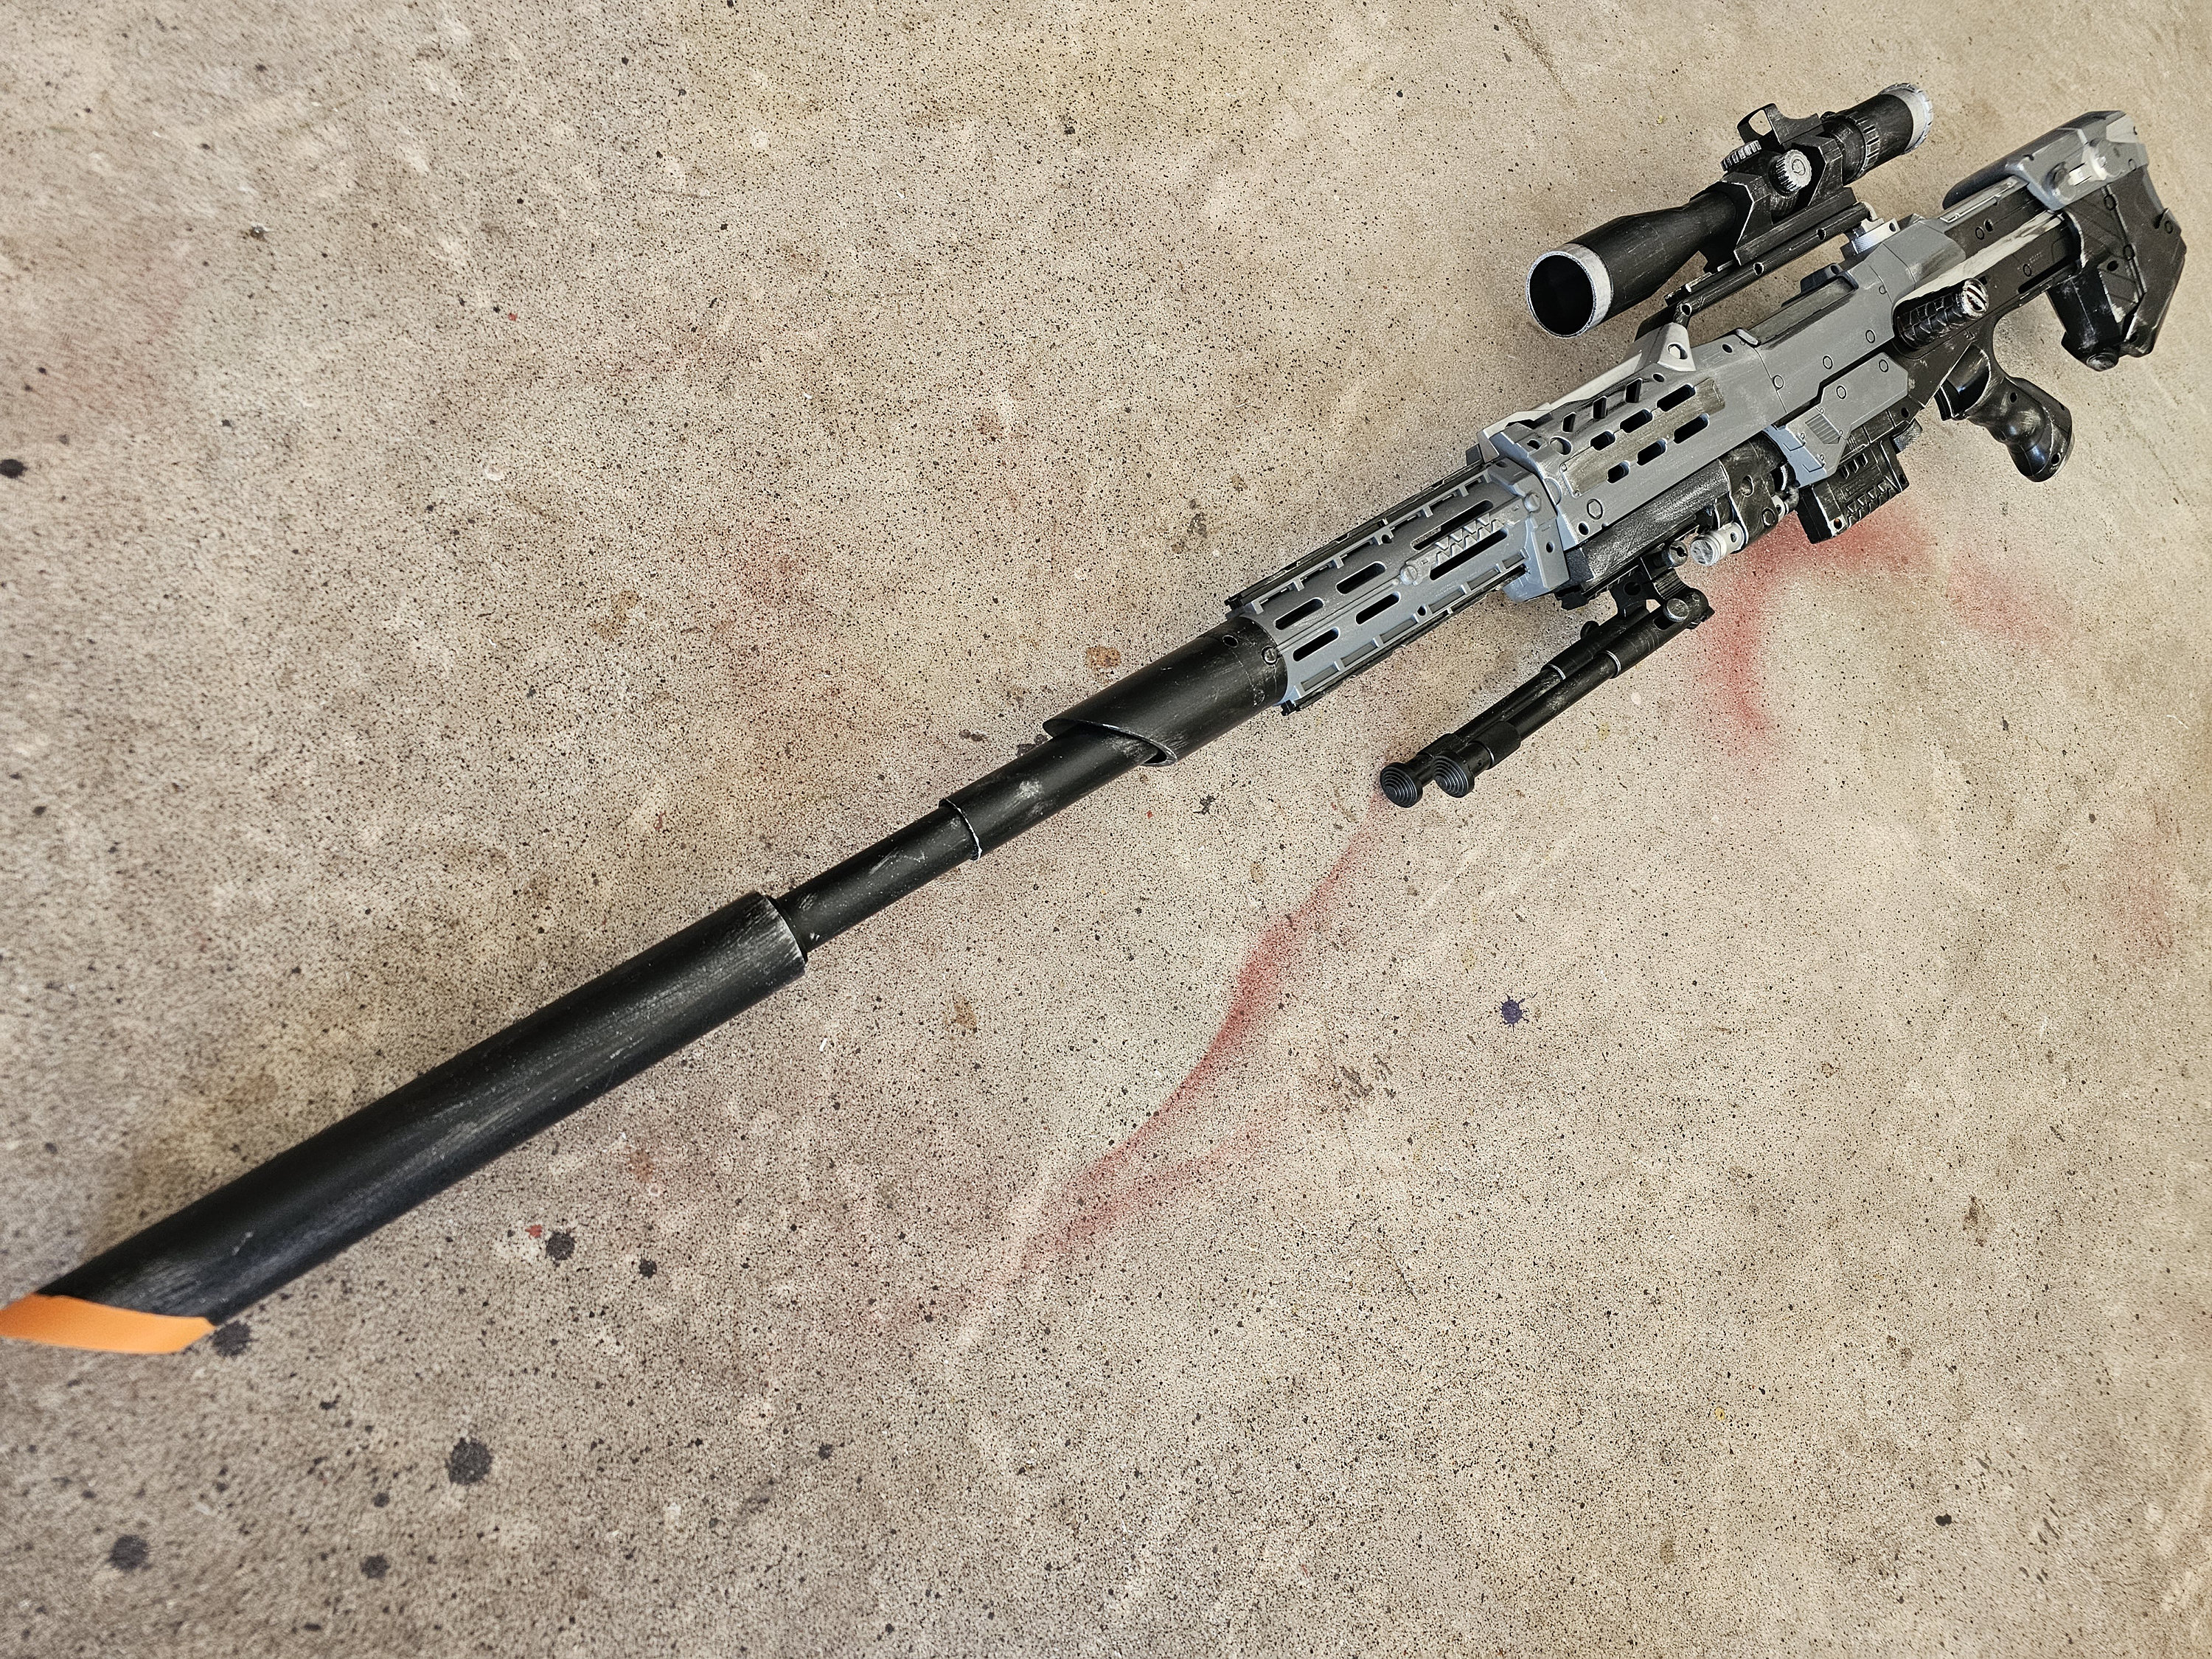 10 Best Nerf Gun Sniper Rifles for the Expert Marksman